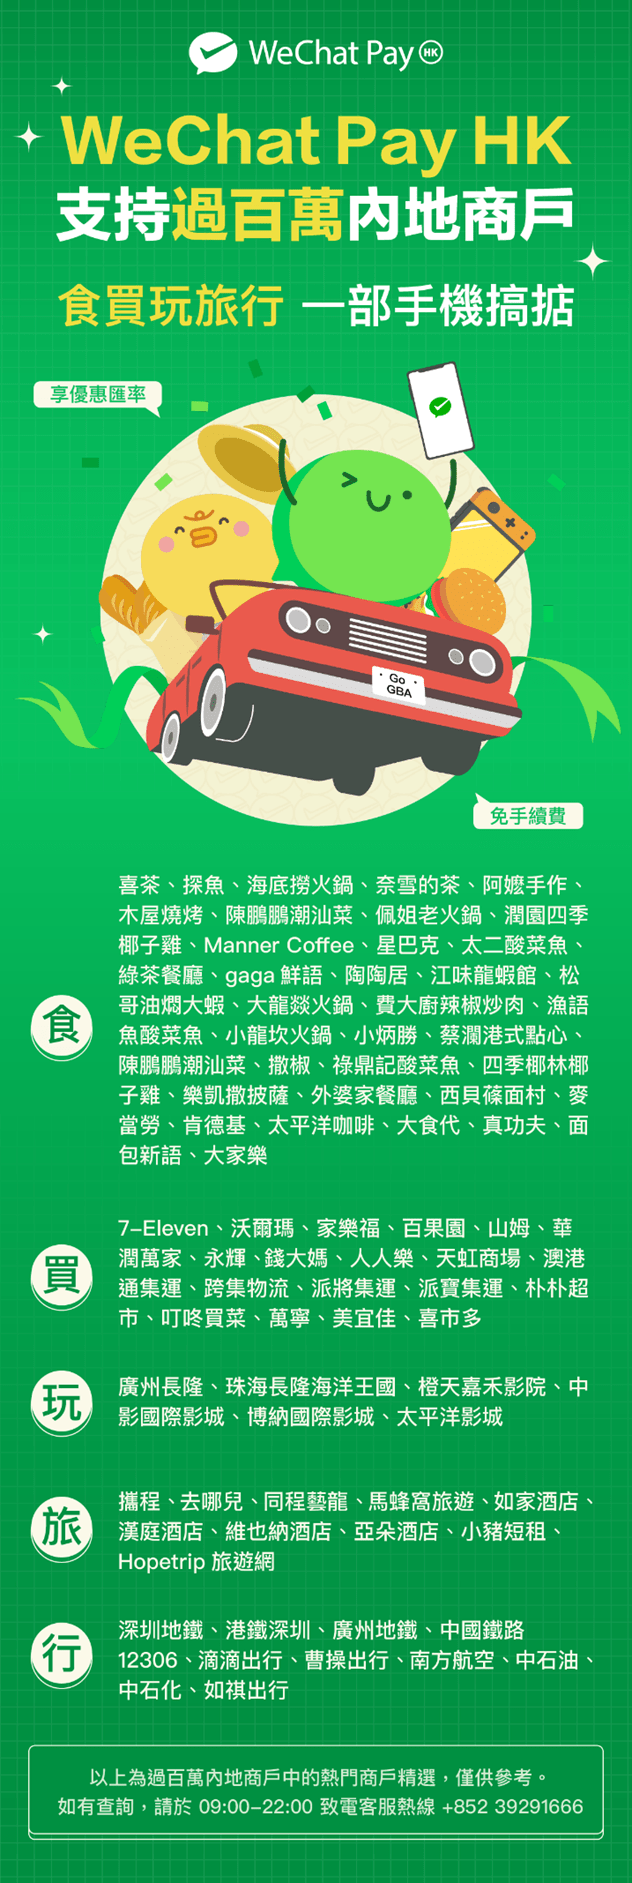 部分内地商户已支援WeChat Pay HK微信支付，包括多间人气热店如喜茶、奈雪的茶、探鱼、润园四季、海底捞火锅等。用户亦可透过WeChat Pay HK购买车票或缴付车资，包括深圳地铁、广州地铁、曹操出行、滴滴打车、中国铁路12306。